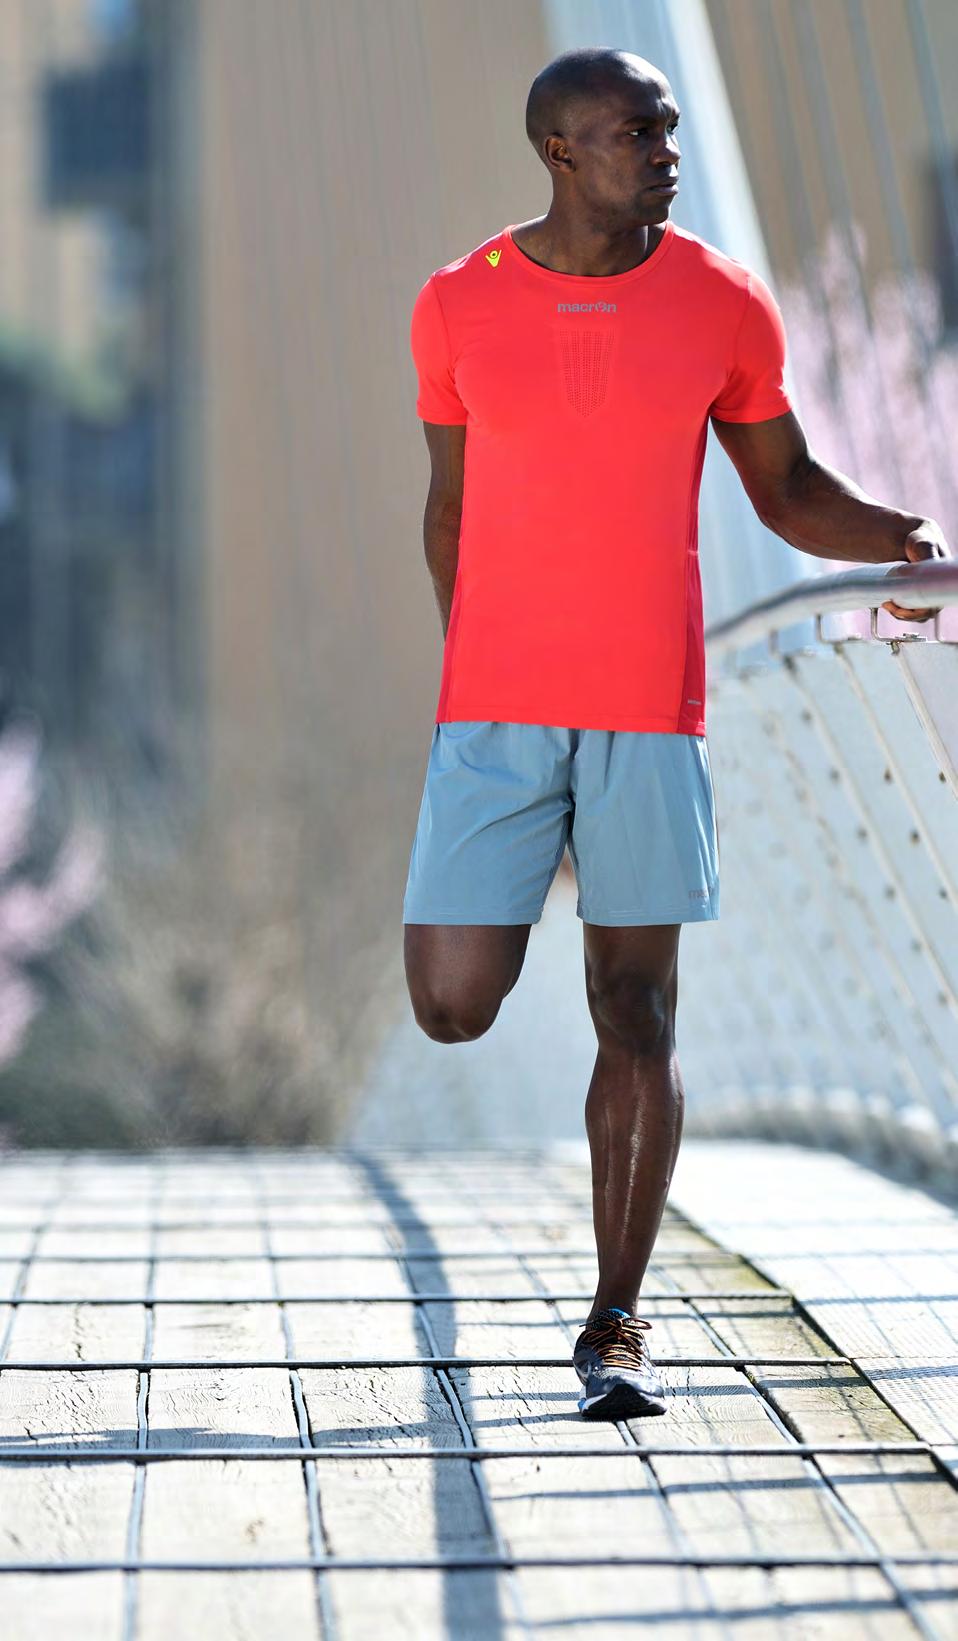 CHINOOK PRO RUN BOSTON MICRO SHORT MAN SPRING SUMMER COLLECTION 2016 Pantaloncini in microfibra elasticizzata leggera (MDrySystem)i realizzati in stile Boston.